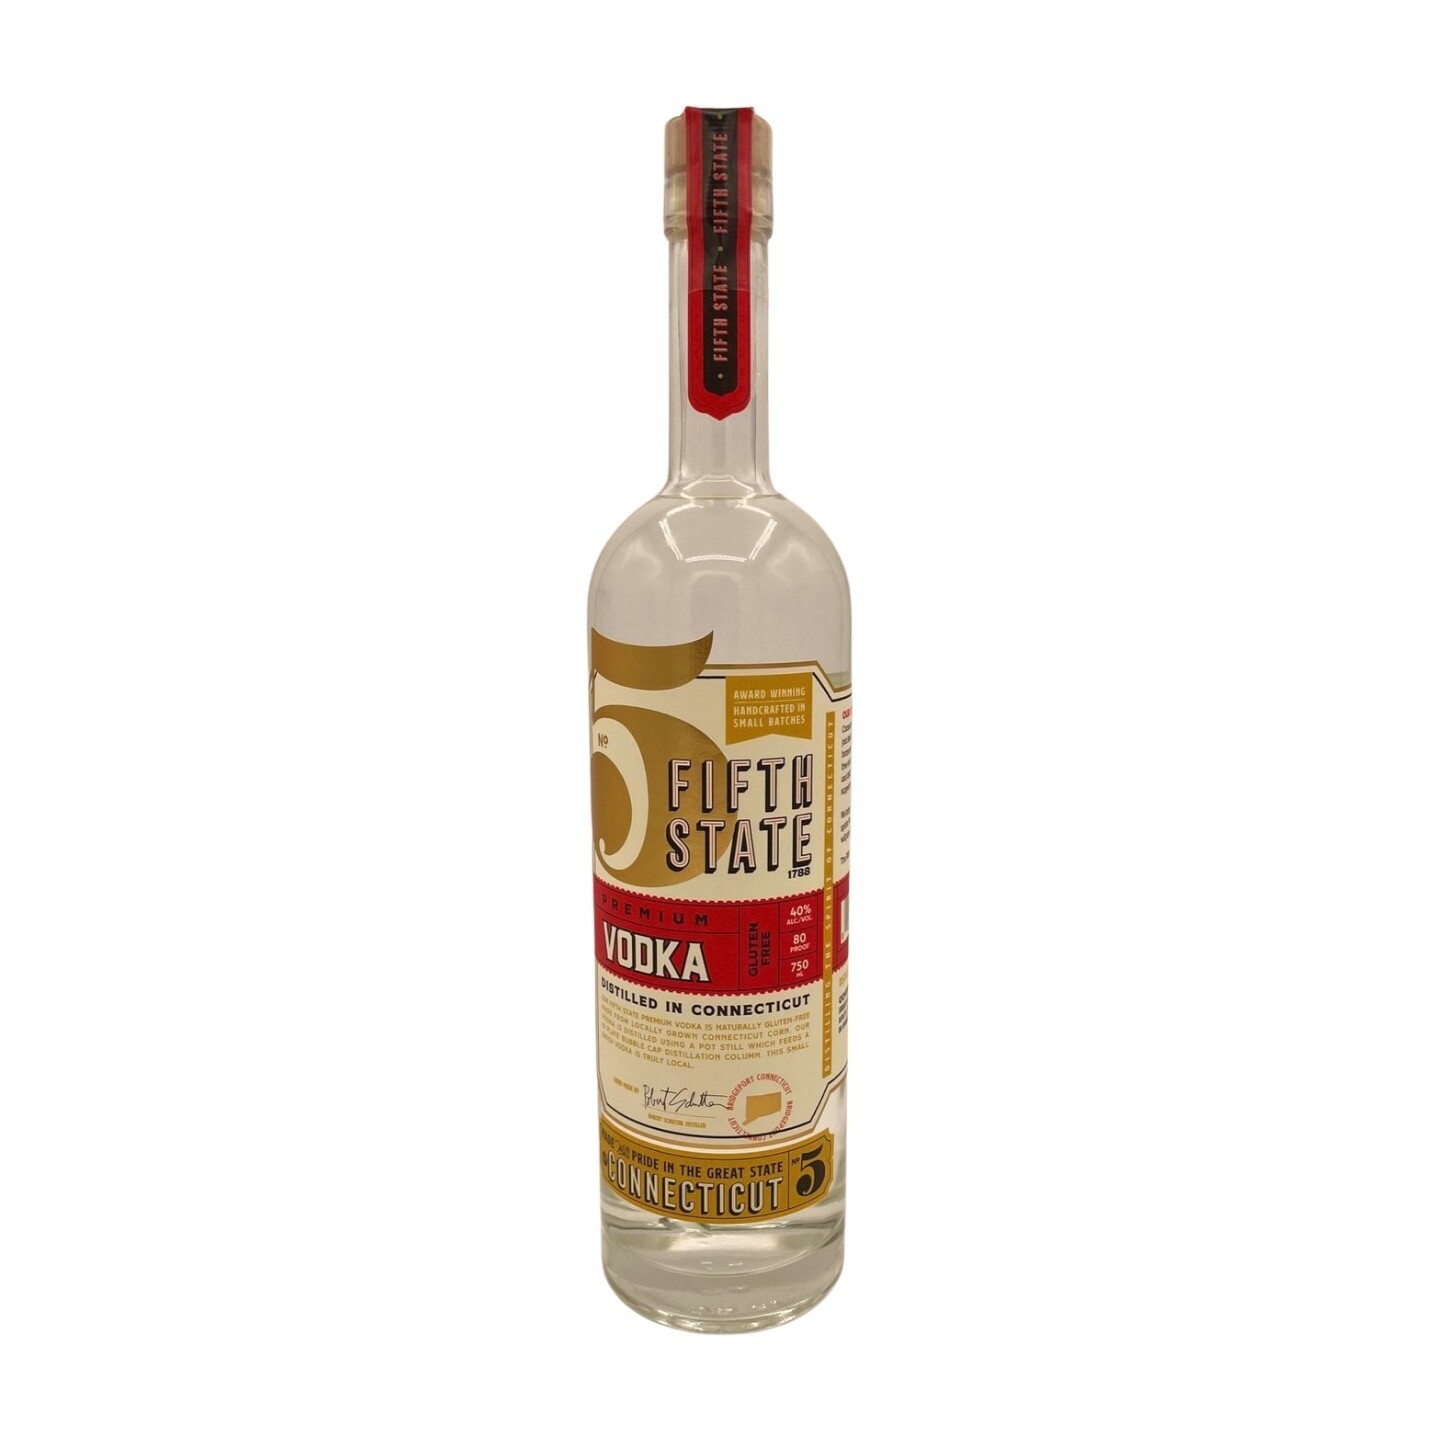 Fifth State Distillery Premium Vodka